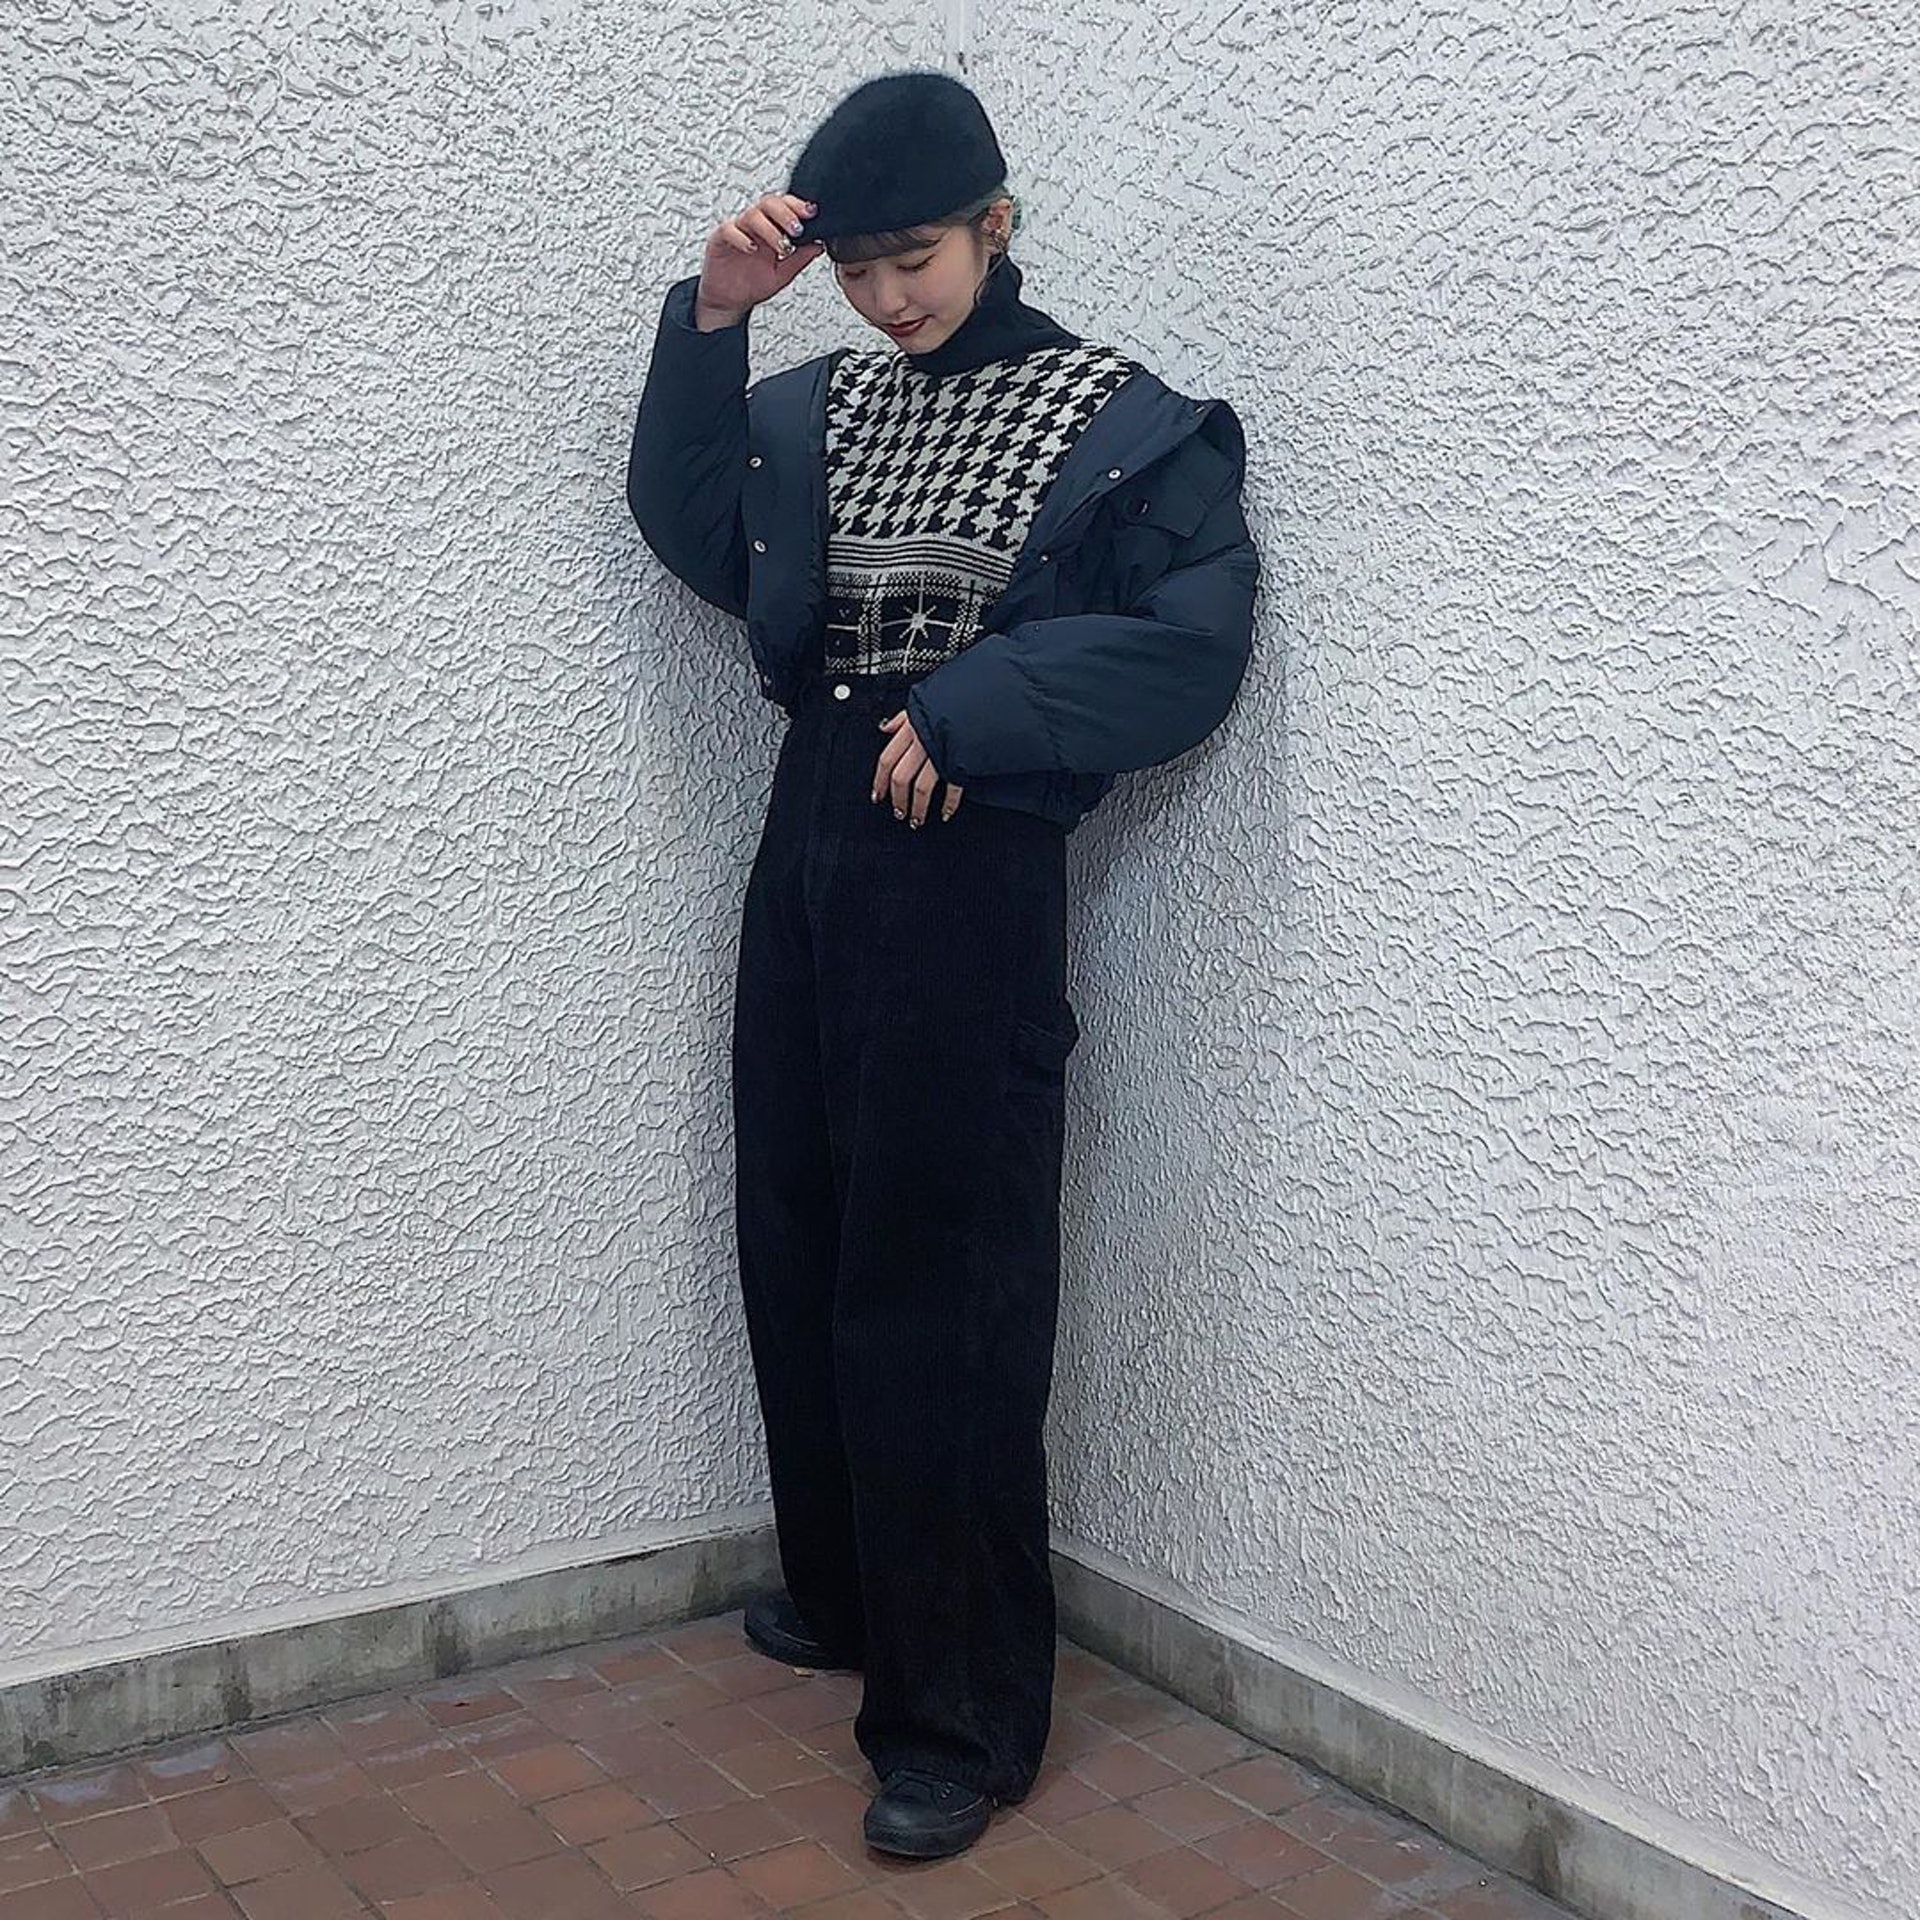 日本女生Chaki喜歡與人分享她的穿搭造型，更會教授重覆搭配的技巧。(__nmsk13@Instagram)